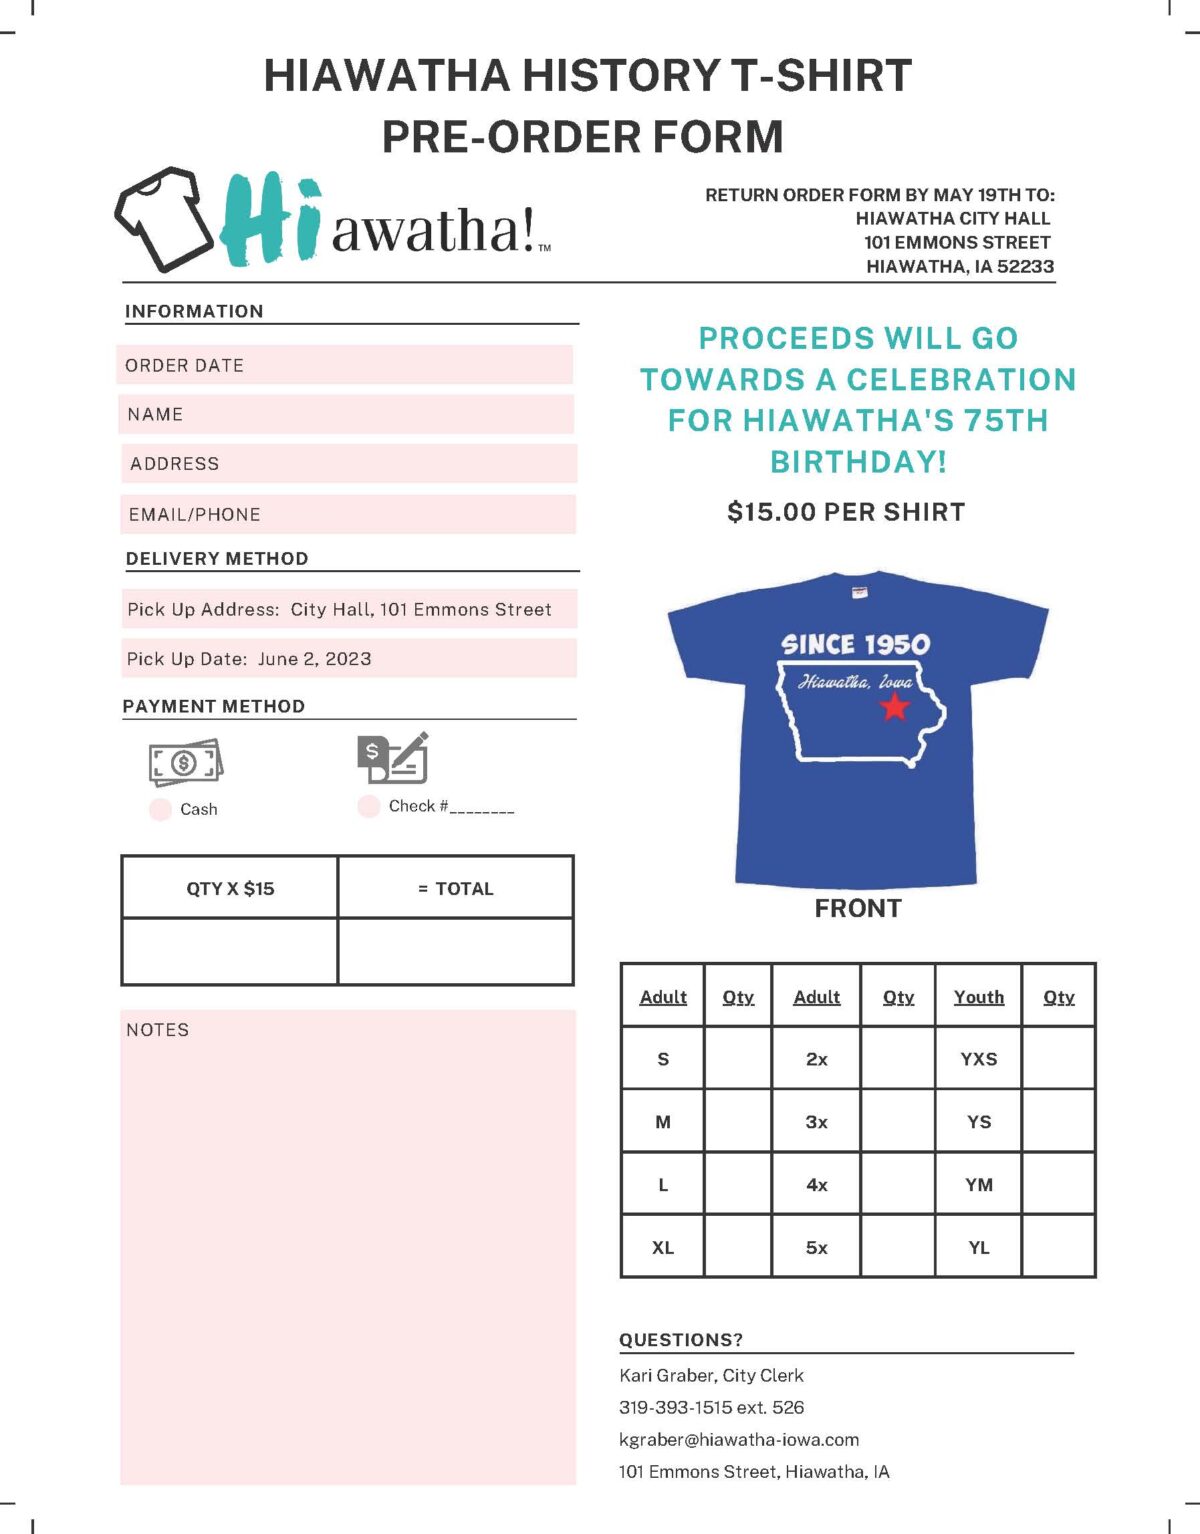 Hiawatha History T-shirt Pre-Order Form